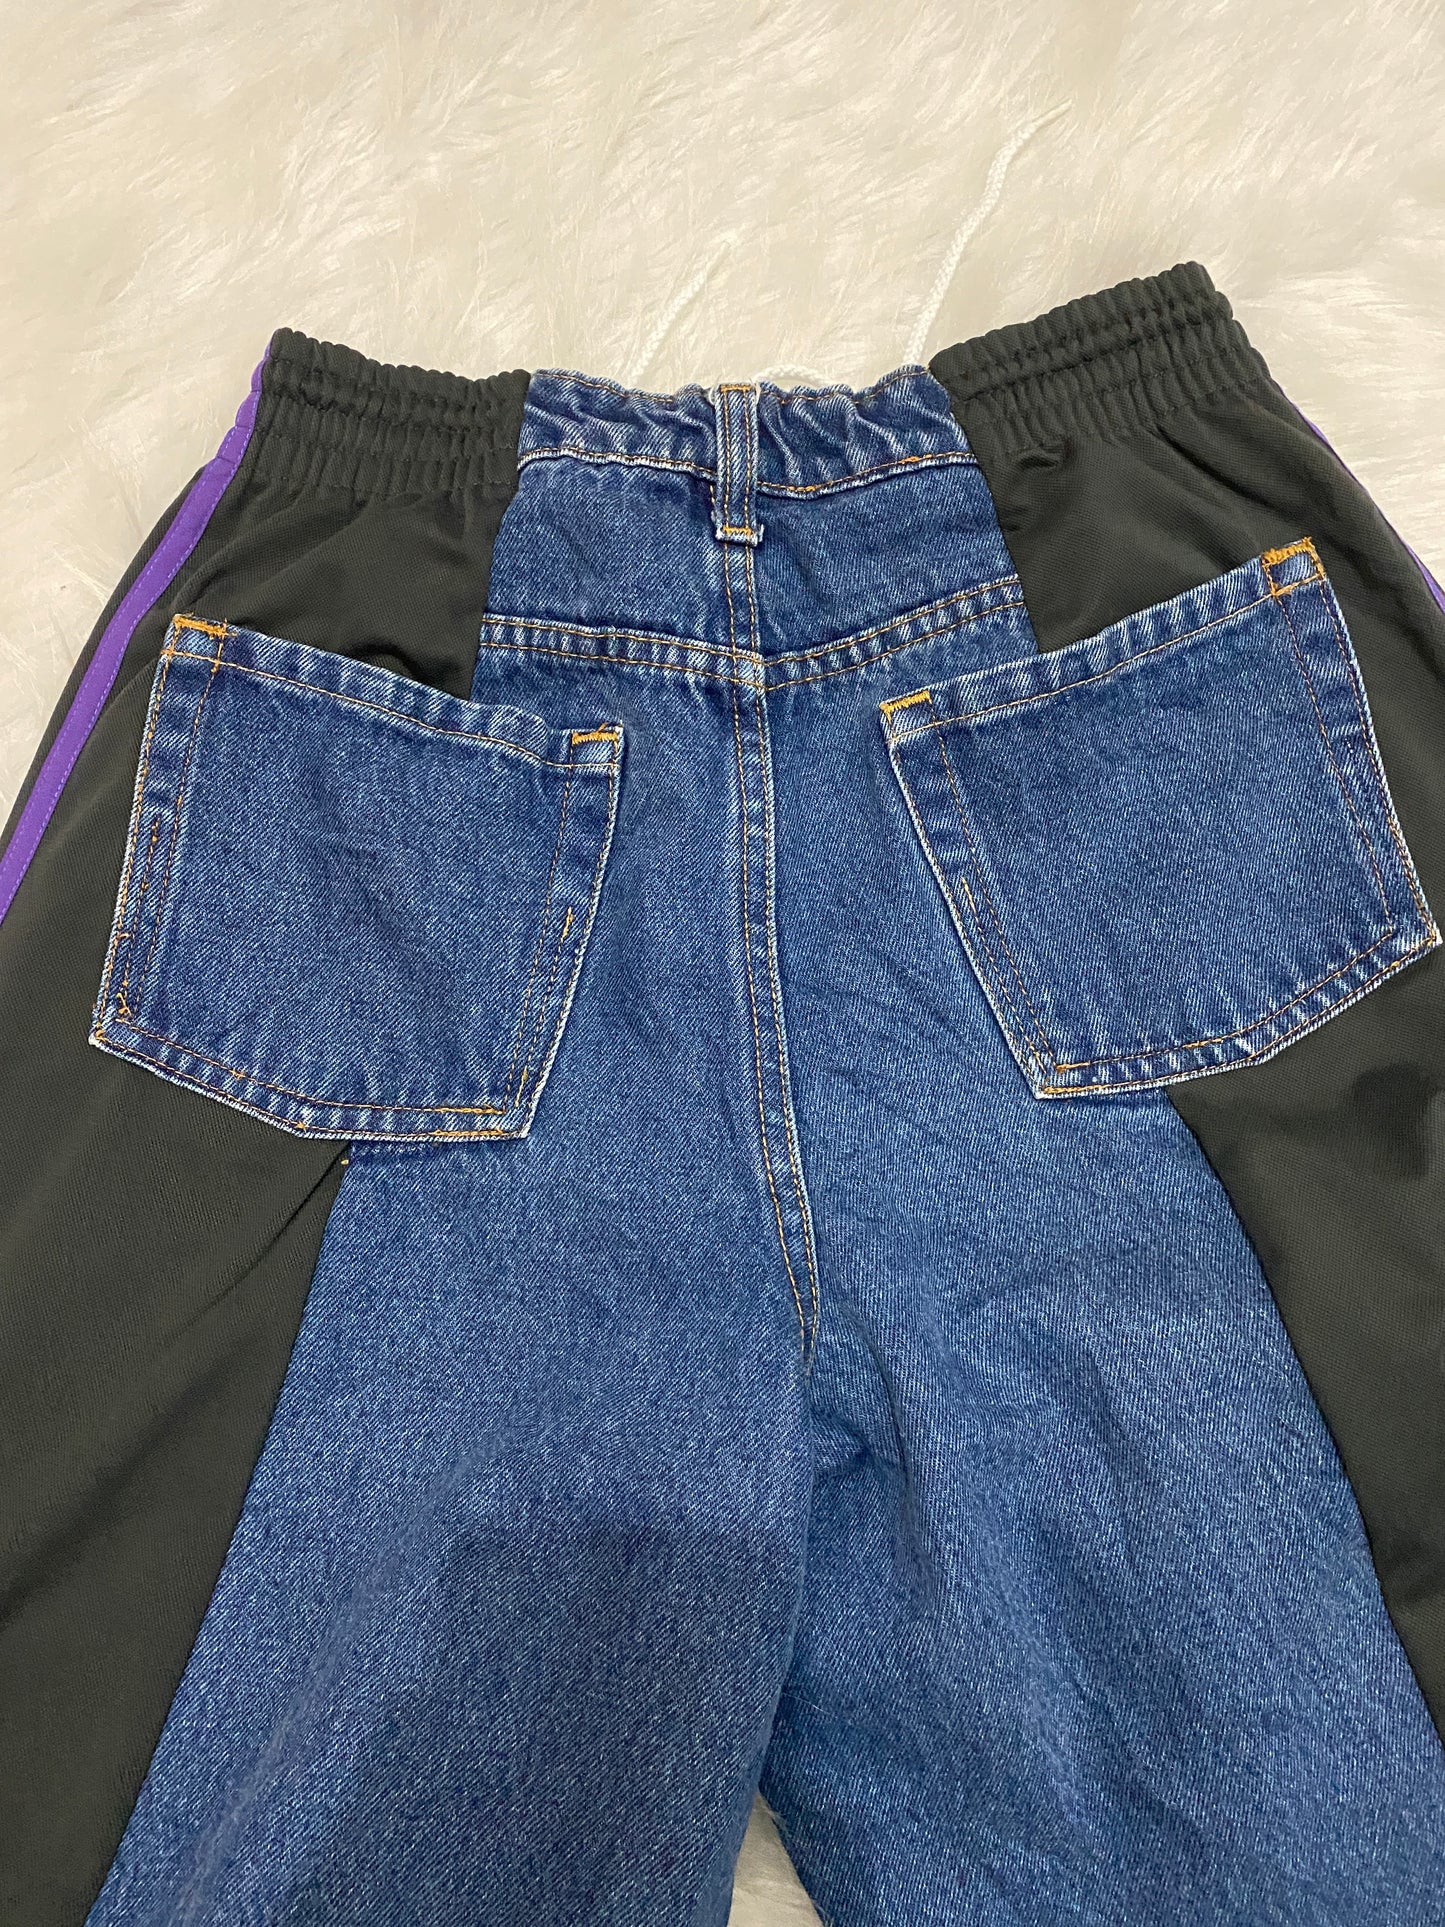 [現貨] Remade Sportpants X Jeans #PANT112